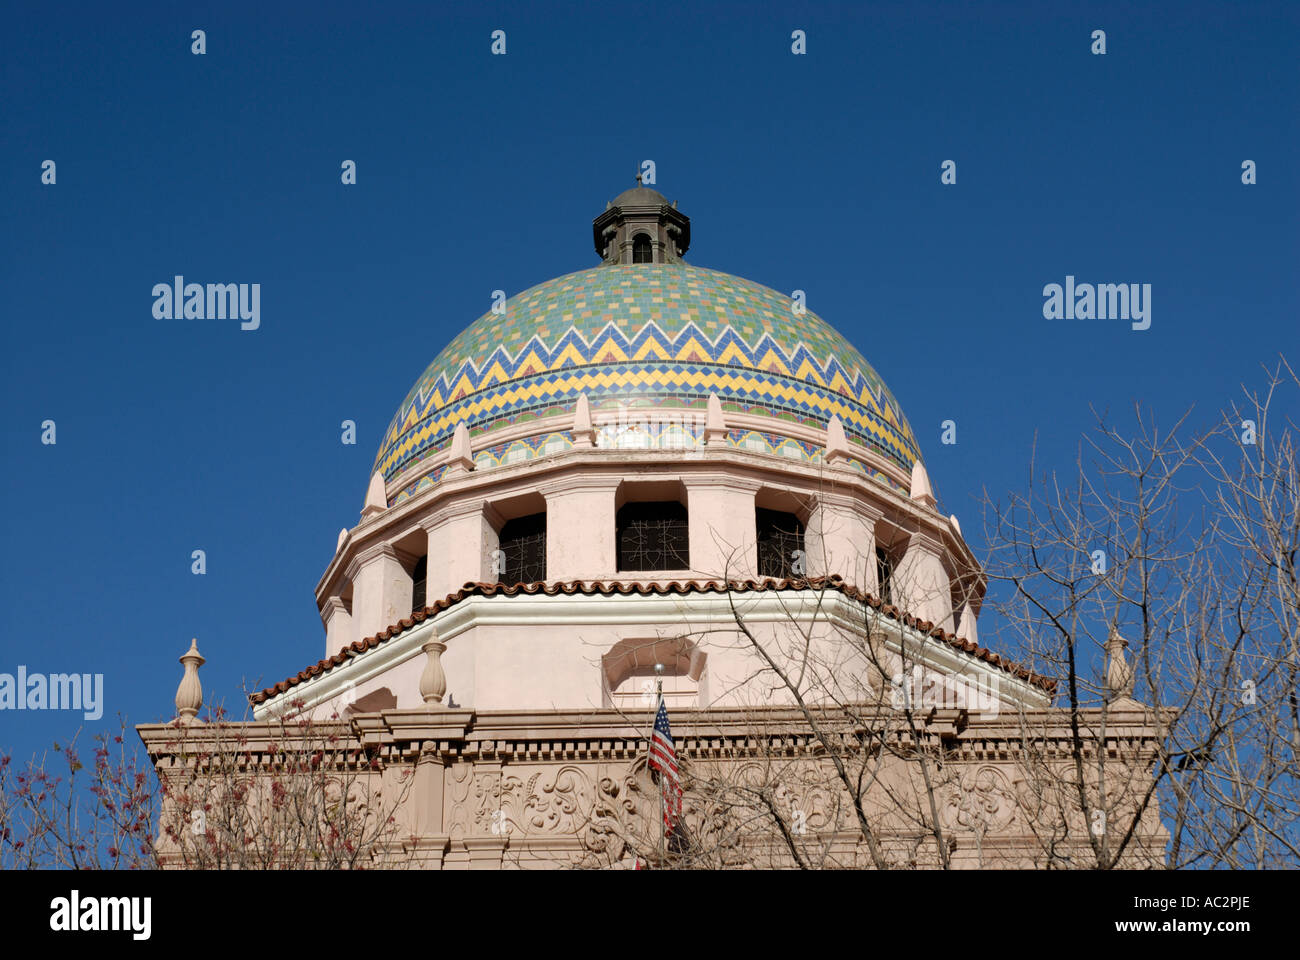 Pima County Courthouse dome colorato con piastrelle colorate, Tucson, Arizona, Stati Uniti d'America Foto Stock